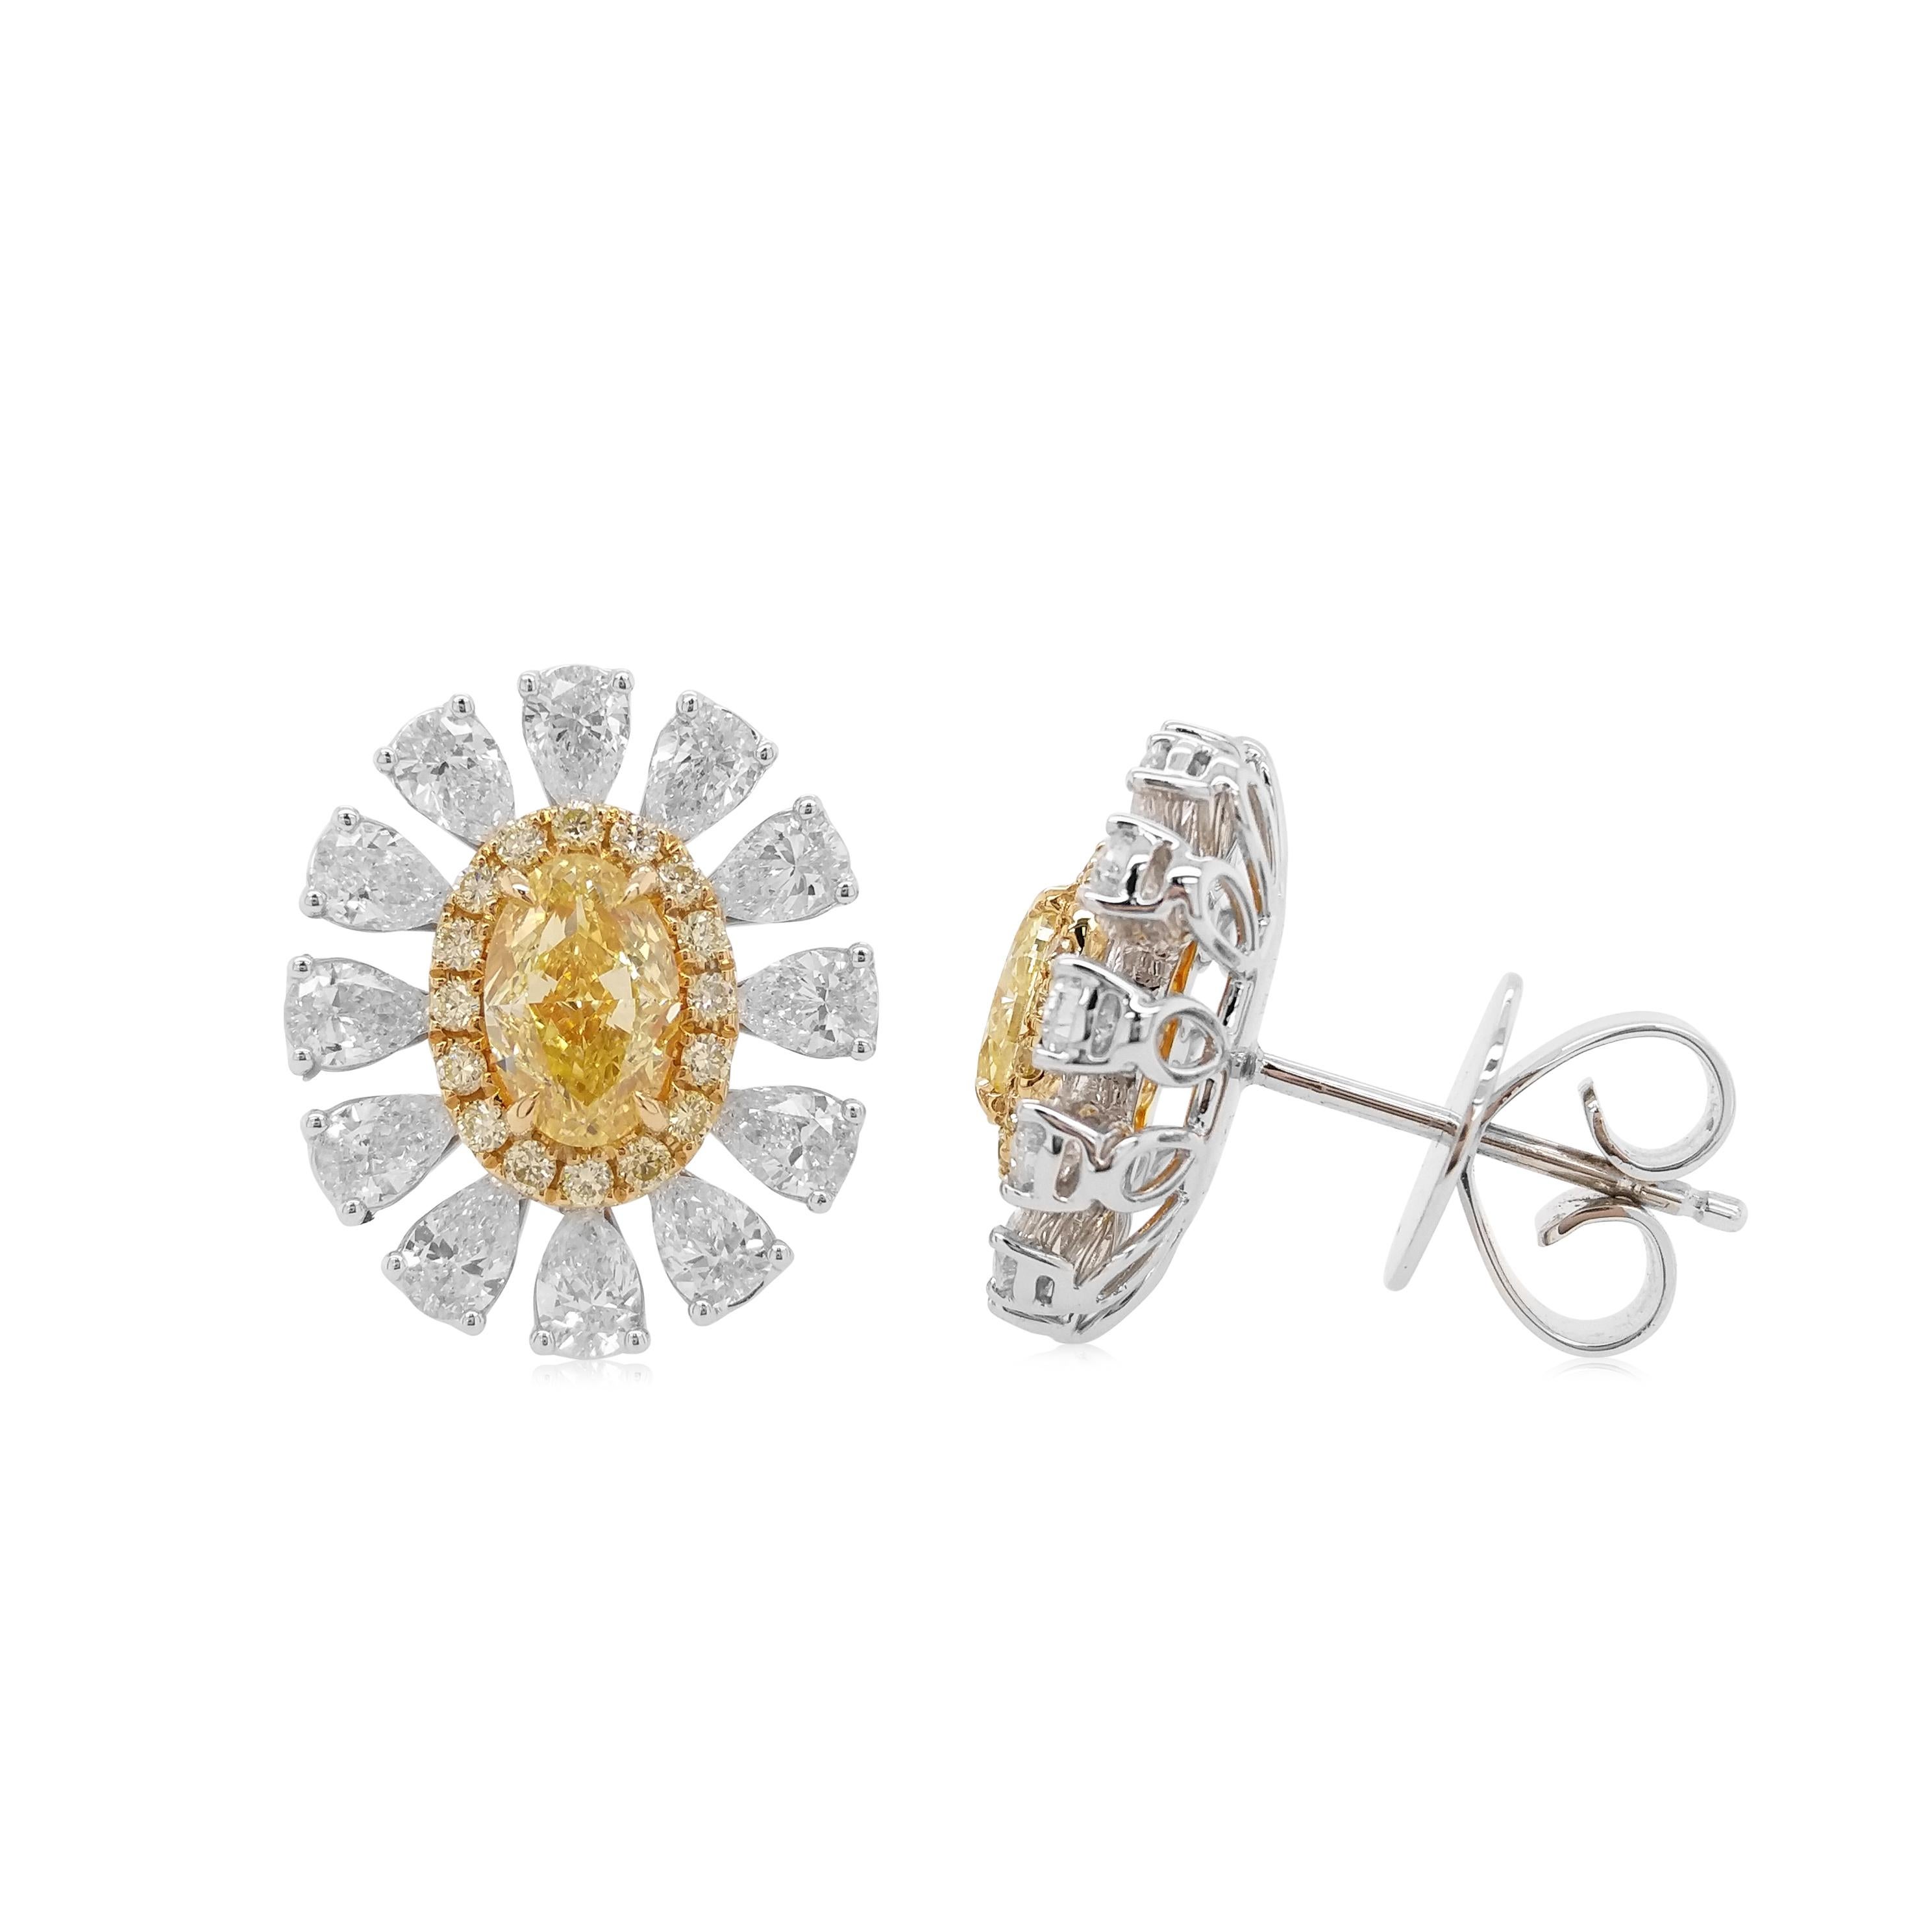 Diese einzigartigen blumenförmigen Ohrringe bestechen durch ihre ovalen gelben Diamanten im Herzen des Designs. Die satte Farbe dieser Diamanten wird durch das zarte Blumenmuster aus 18 Karat Weißgold, das durch eine Kombination birnenförmiger